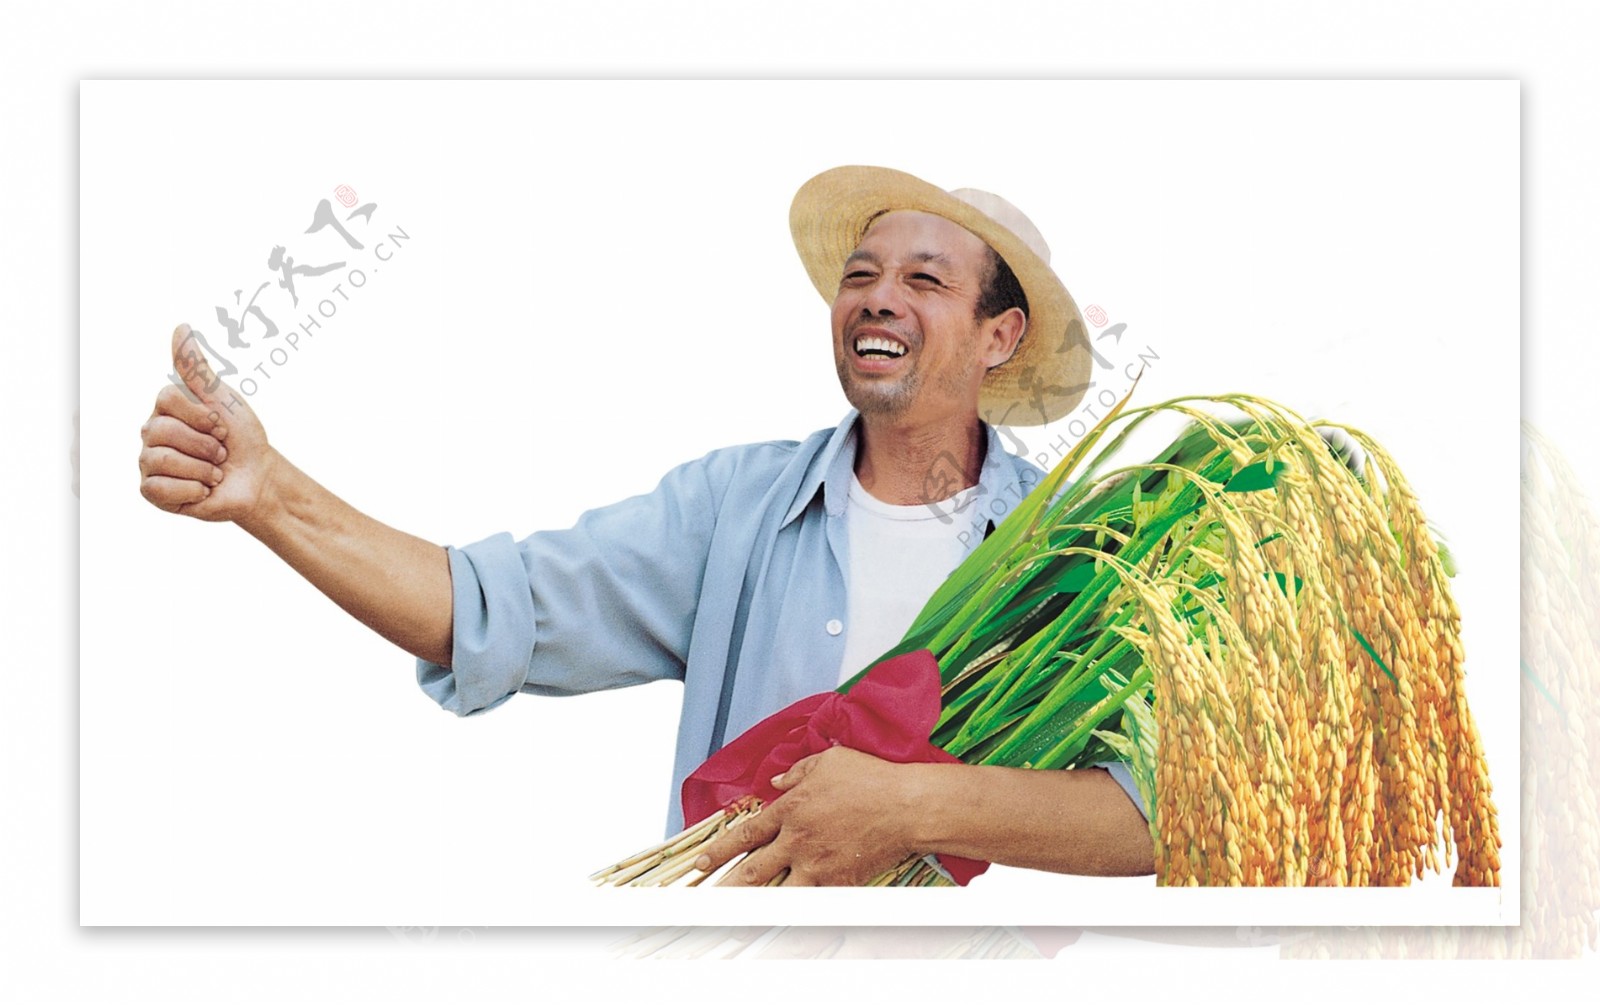 農民伯伯豐收割水稻圖片素材-JPG圖片尺寸6720 × 4480px-高清圖案501428900-zh.lovepik.com